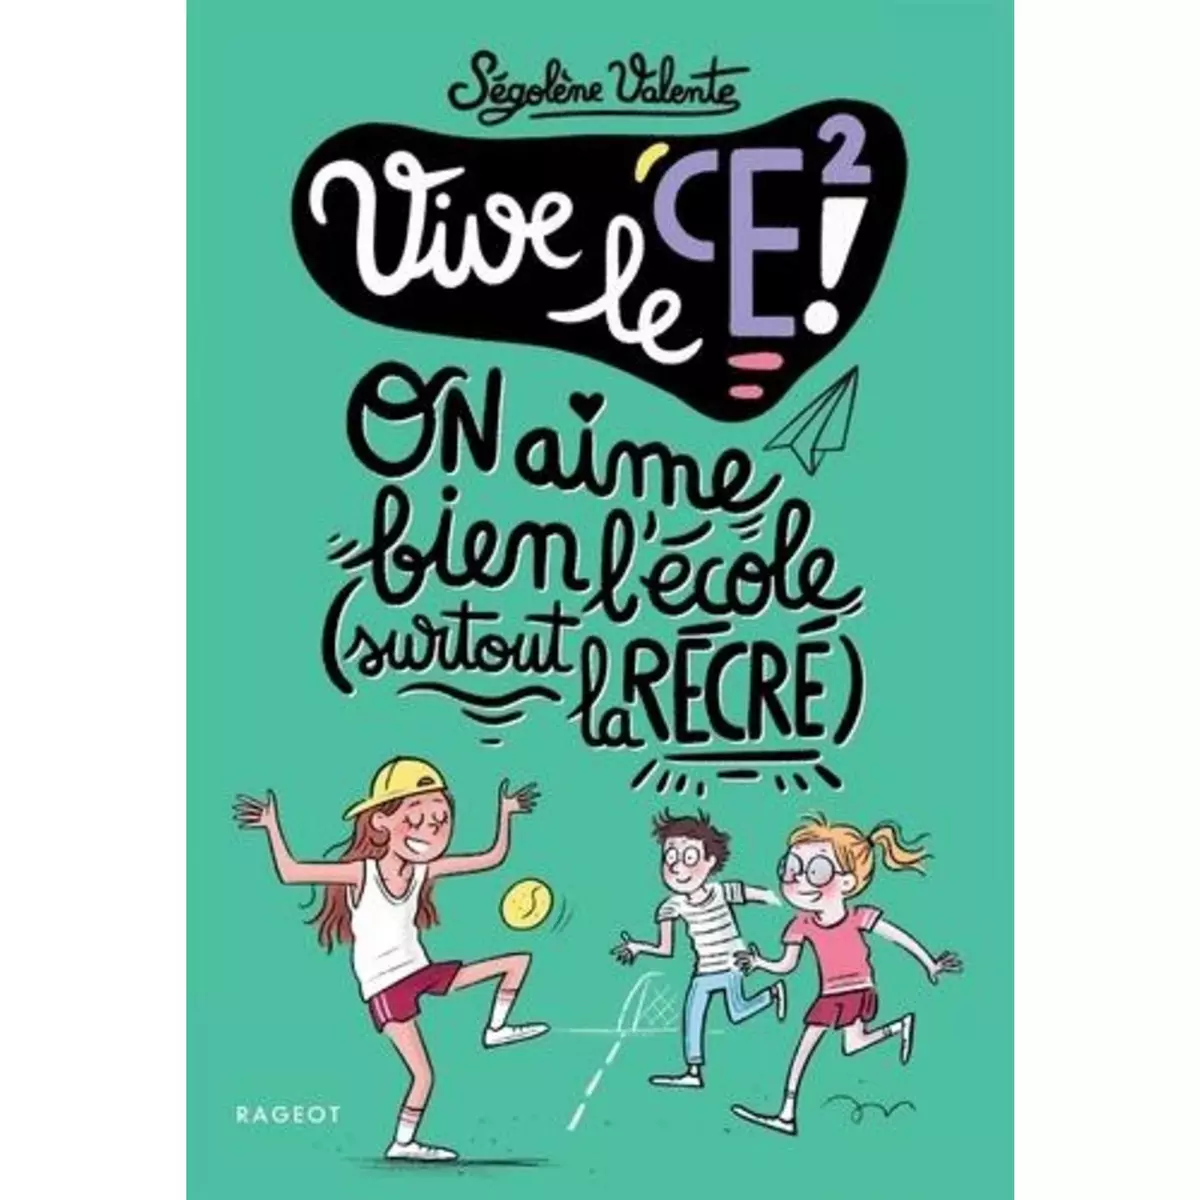  VIVE LE CE2 ! : ON AIME BIEN L'ECOLE, SURTOUT LA RECRE !, Valente Ségolène